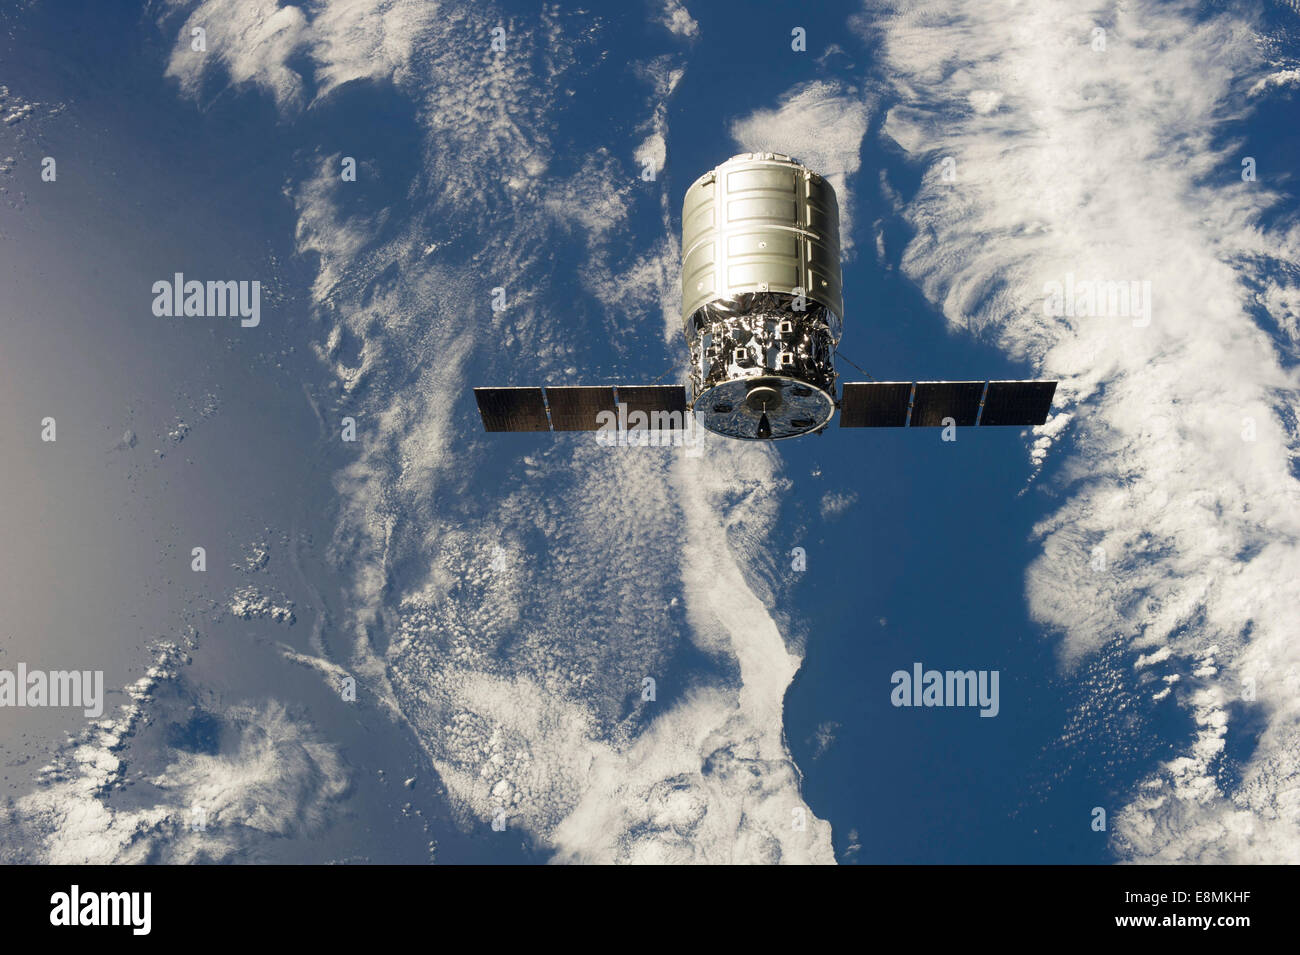 Settembre 29, 2013 - Il primo Cygnus commerciale cargo veicolo spaziale in orbita sopra la terra. Foto Stock